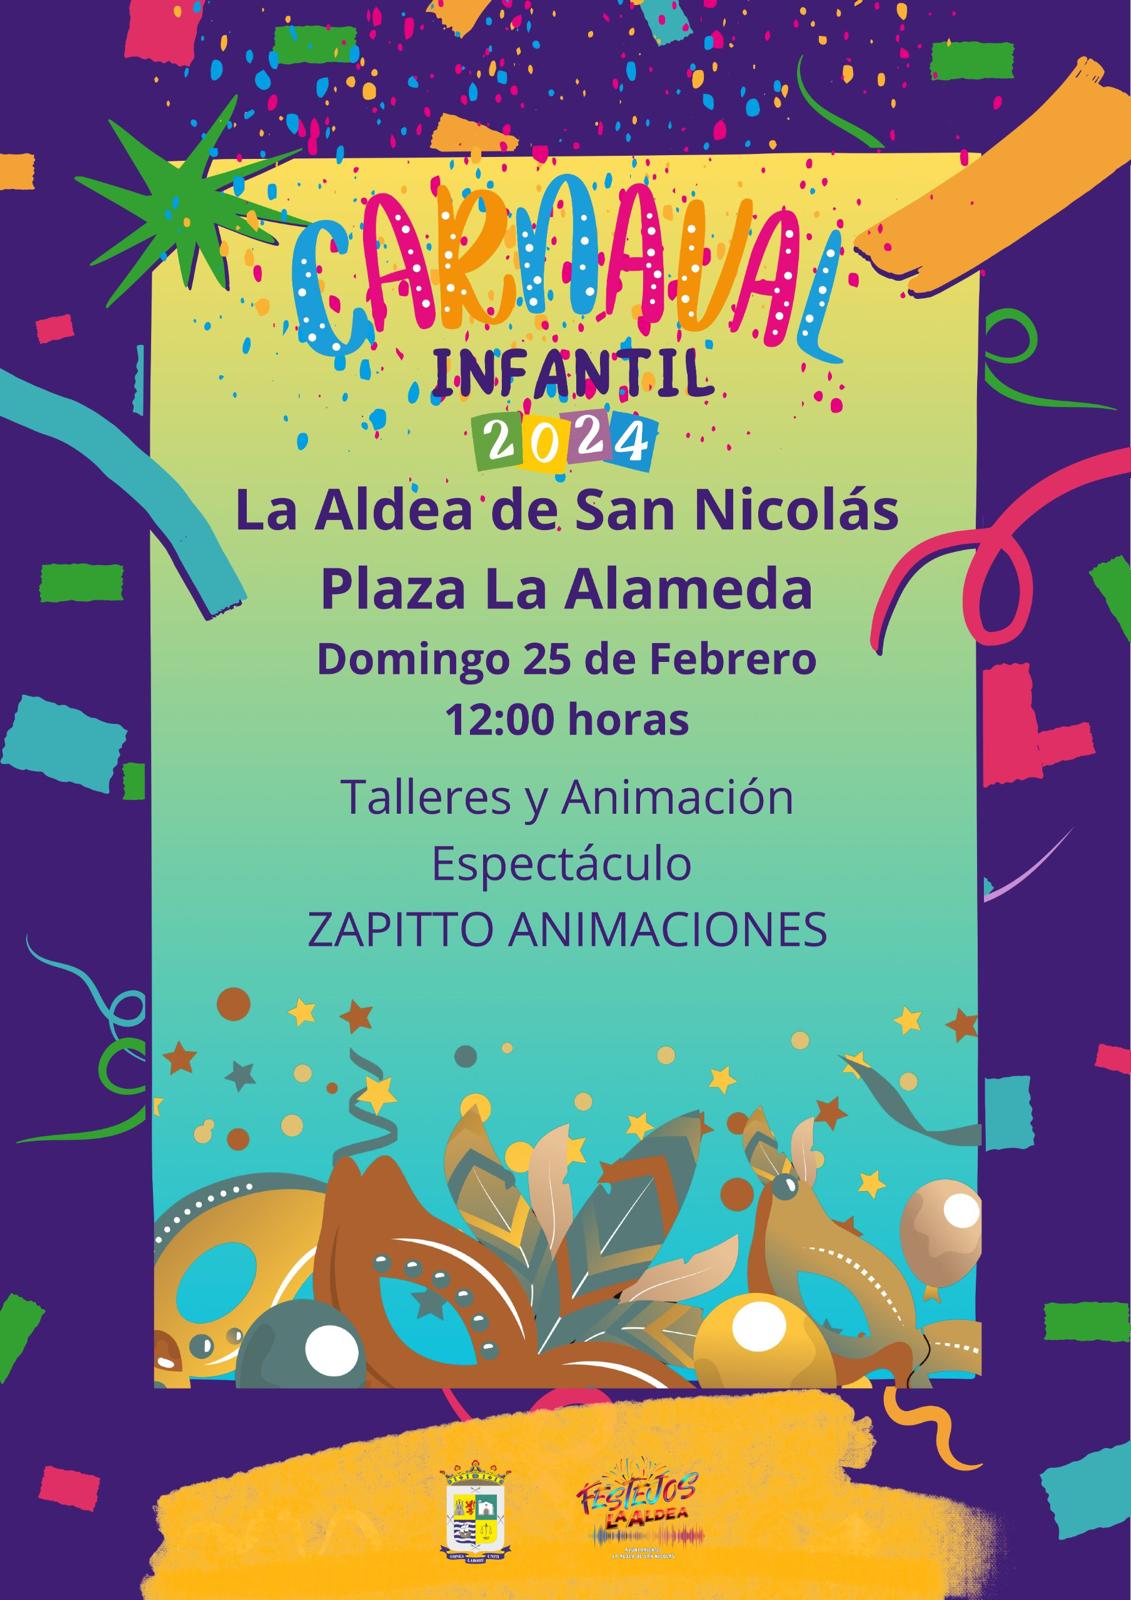 Talleres, animación y espectáculos para celebrar el Carnaval Infantil en La Aldea de San Nicolás